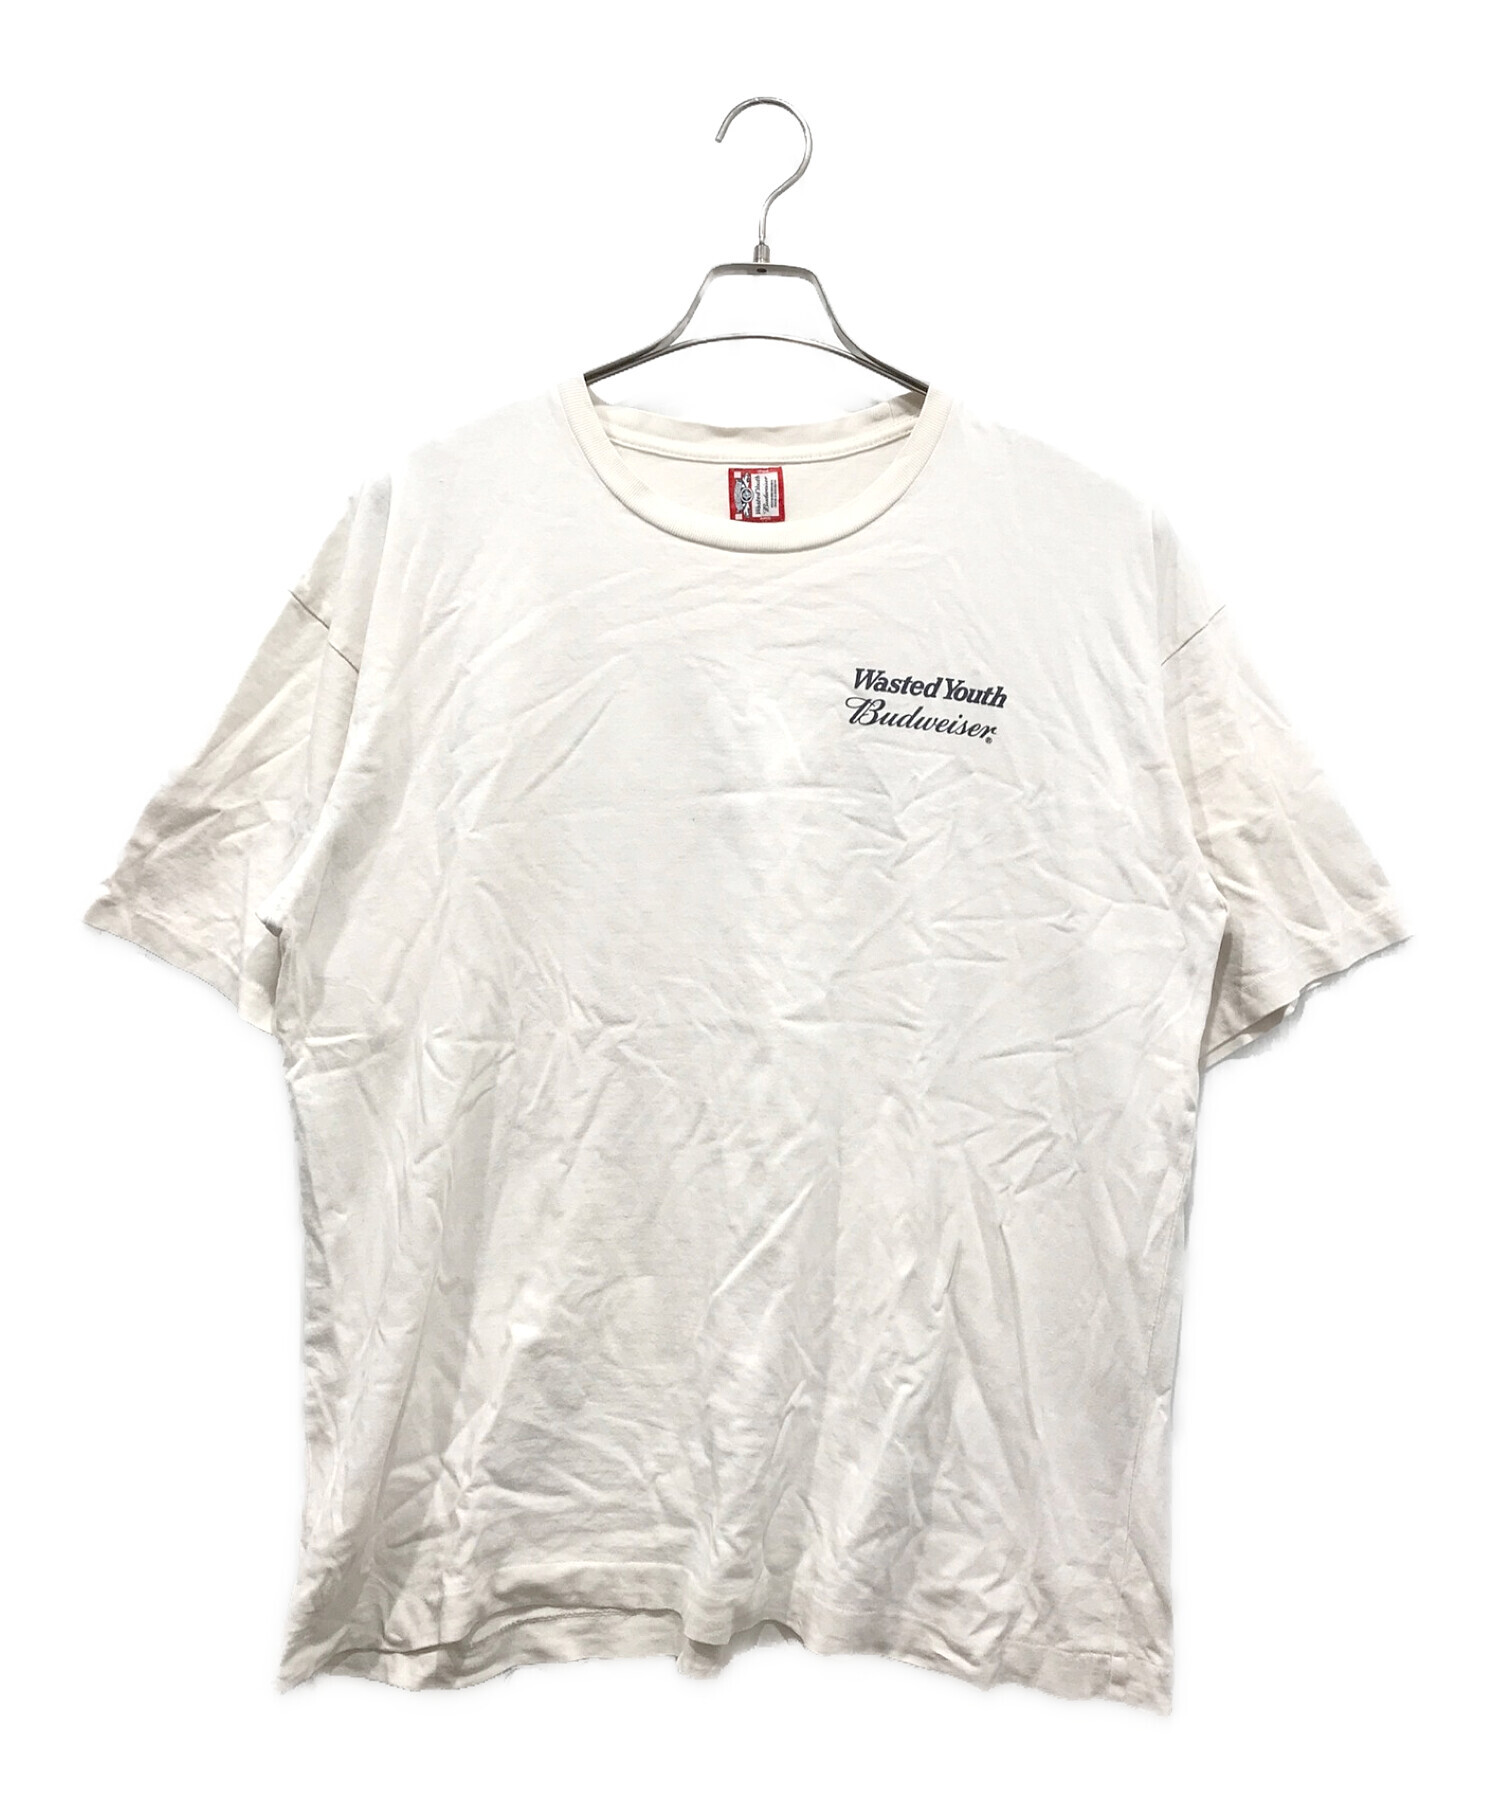 WASTED YOUTH (ウエステッド ユース) BUDWEISER (バドワイザー) Tシャツ ホワイト サイズ:XL